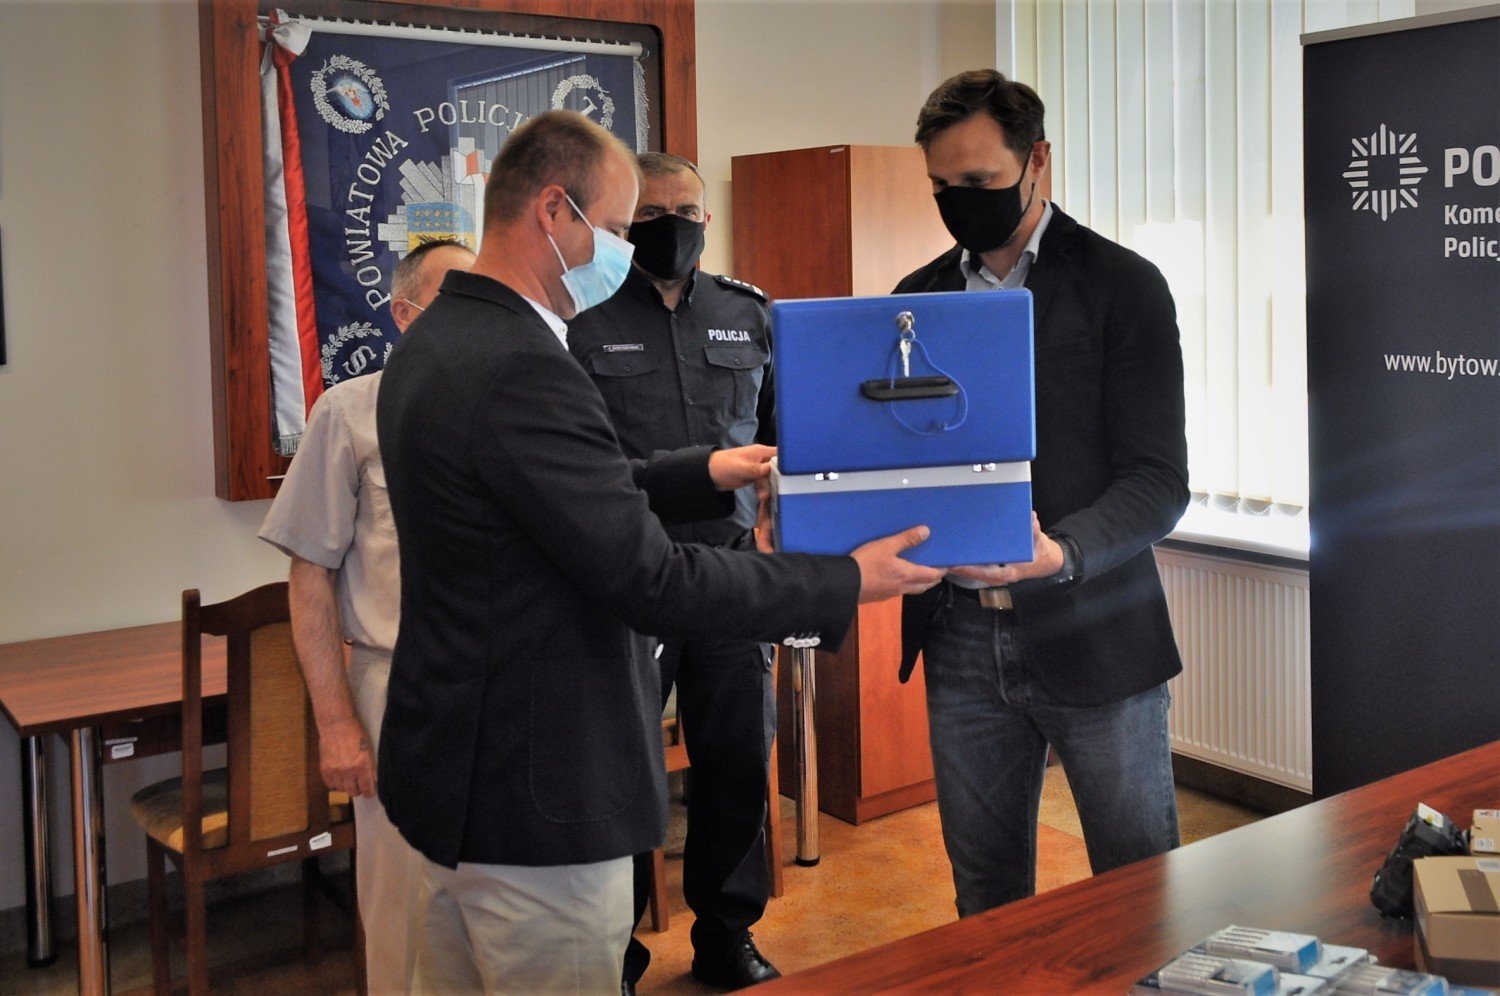 Policjanci z Kołczygłów mają już własny alkometr. Urządzenie za 12 tys. zł  sfinansował głównie samorząd| ZDJĘCIA | Bytów Nasze Miasto